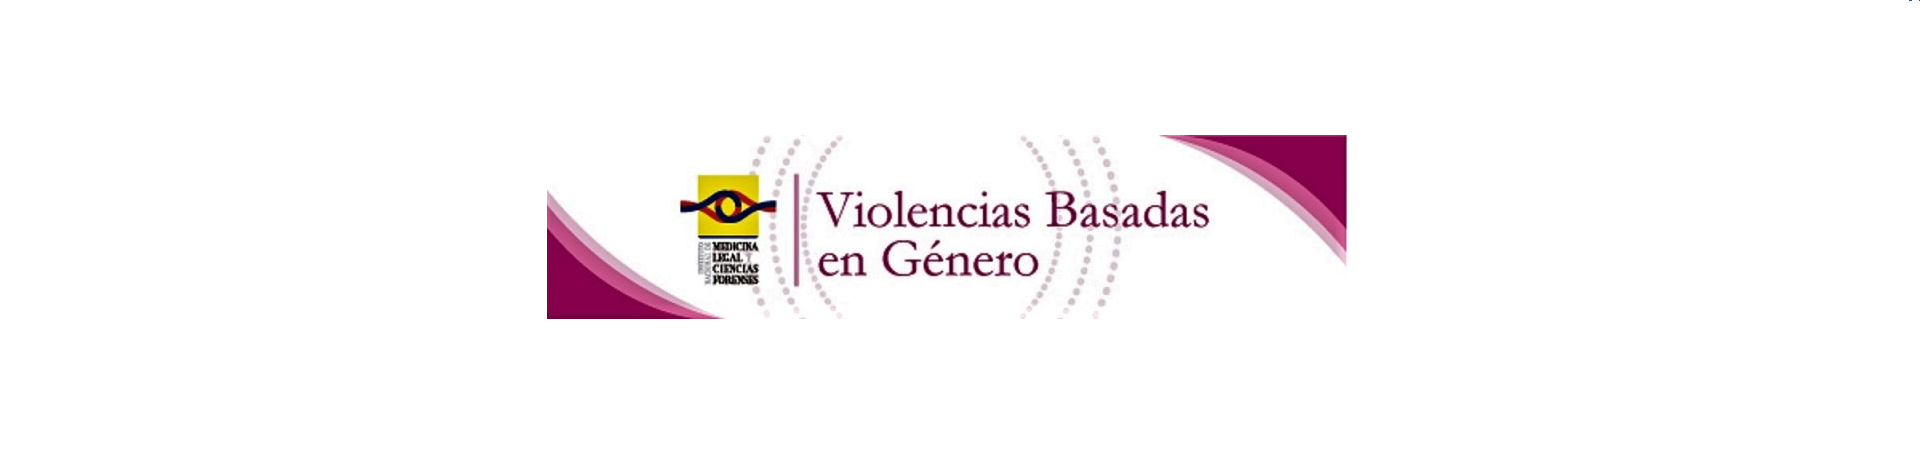 VIOLENCIA BASADA EN GENERO 